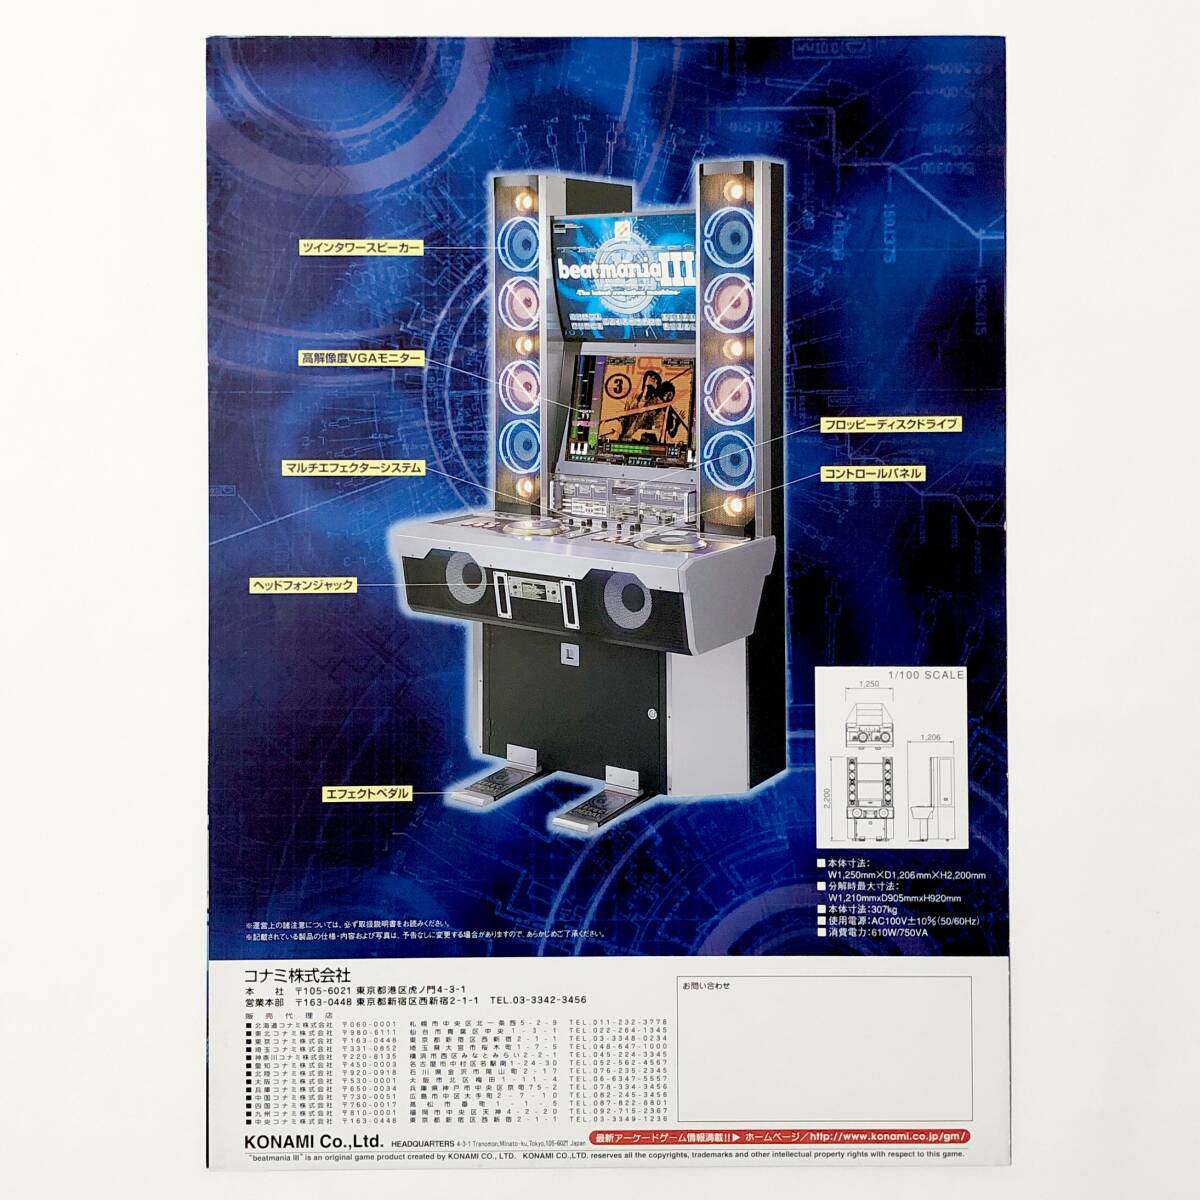 ビートマニア スリー A4サイズ チラシ コナミ ビーマニ アーケード フライヤー 広告 Beatmania Ⅲ Promo Ad Flyer Konami Arcade Game_画像2